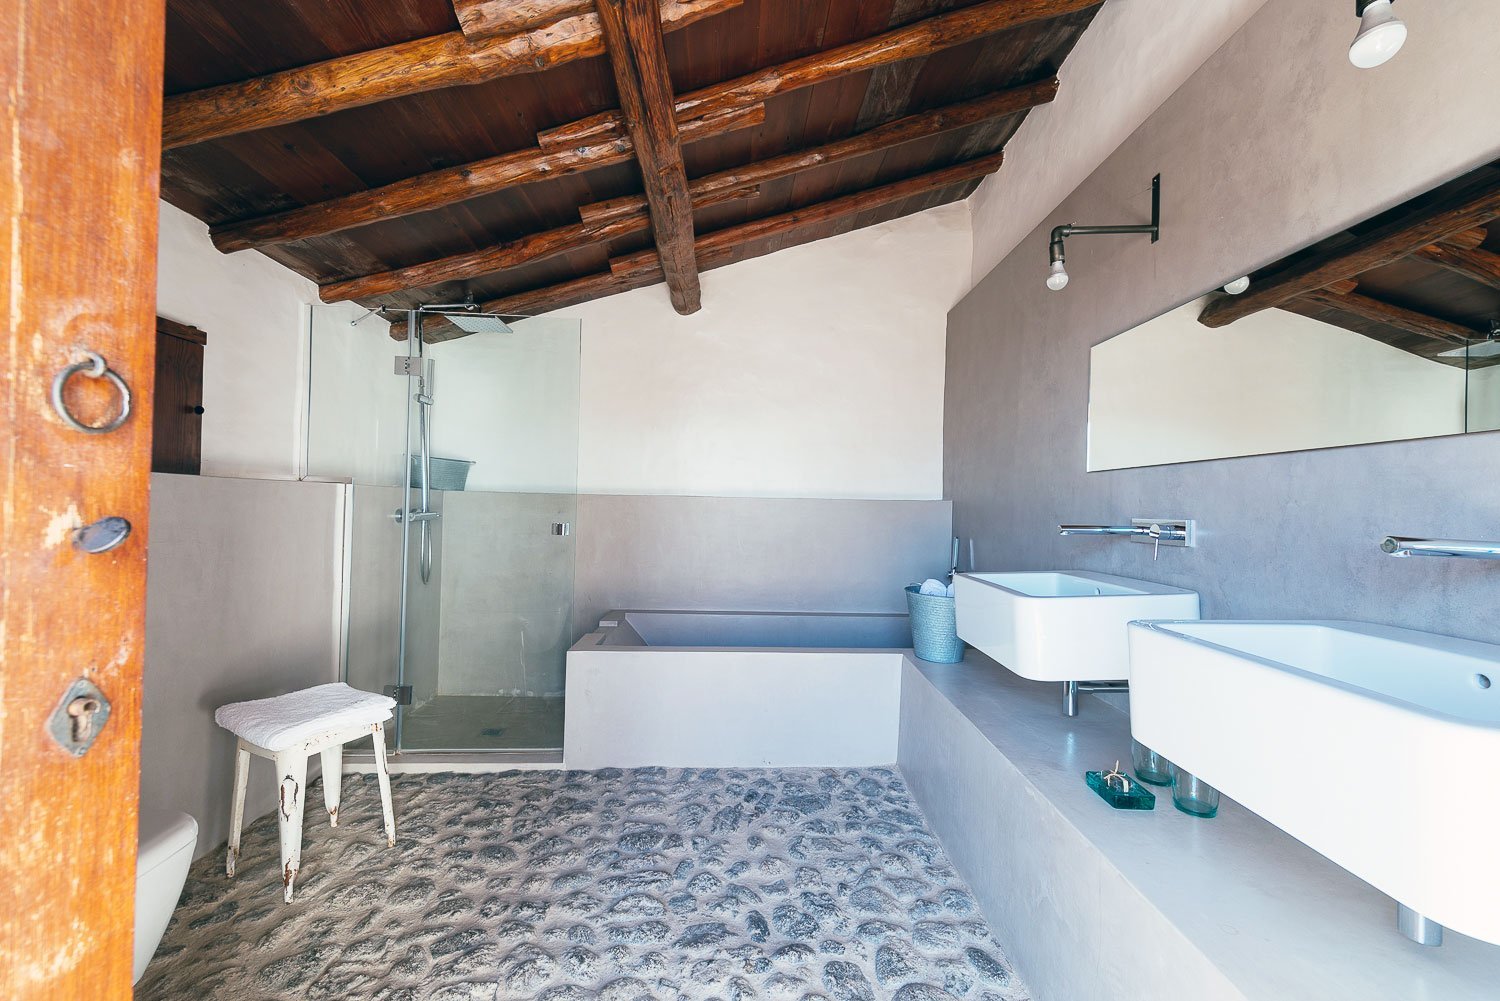 El gran baño renovado, que combina elementos del siglo XVII con el siglo XXI - La Casa del Alpendre.